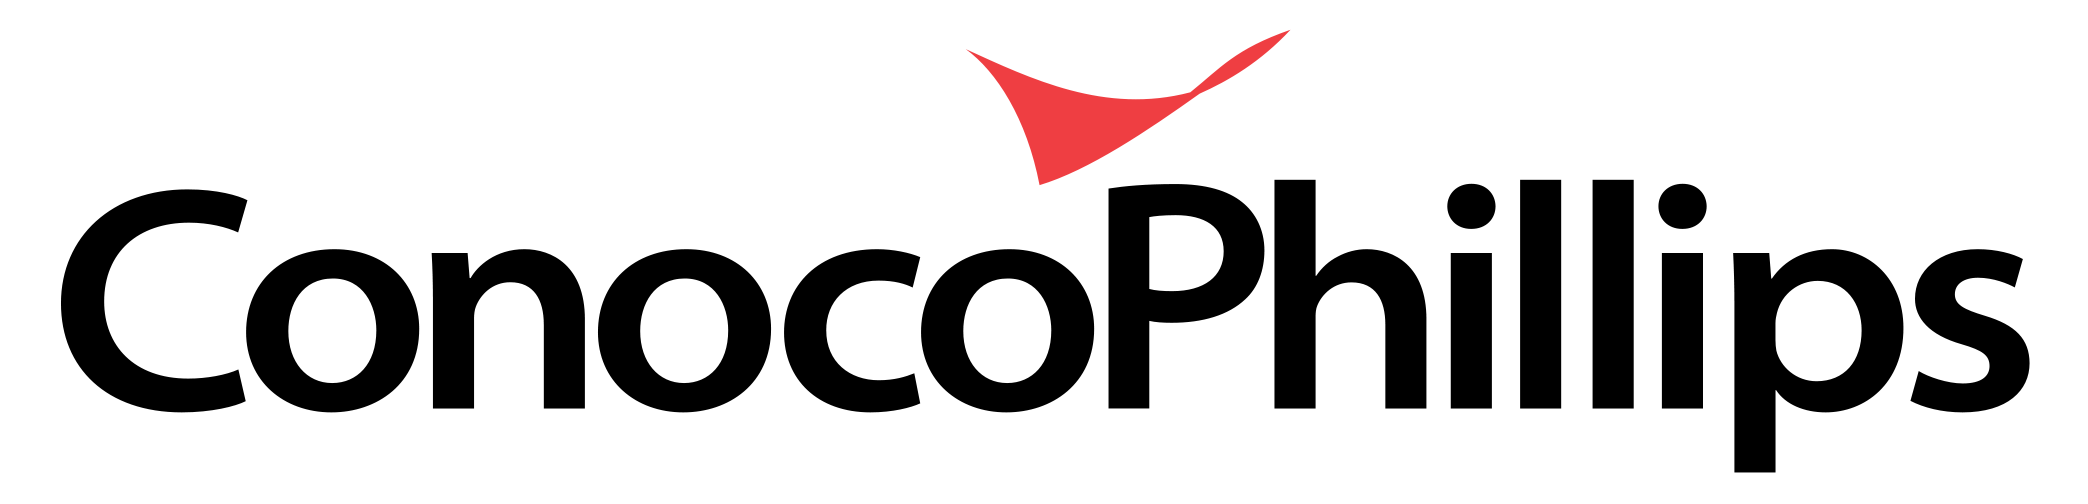 Logotipo ConocoPhillips